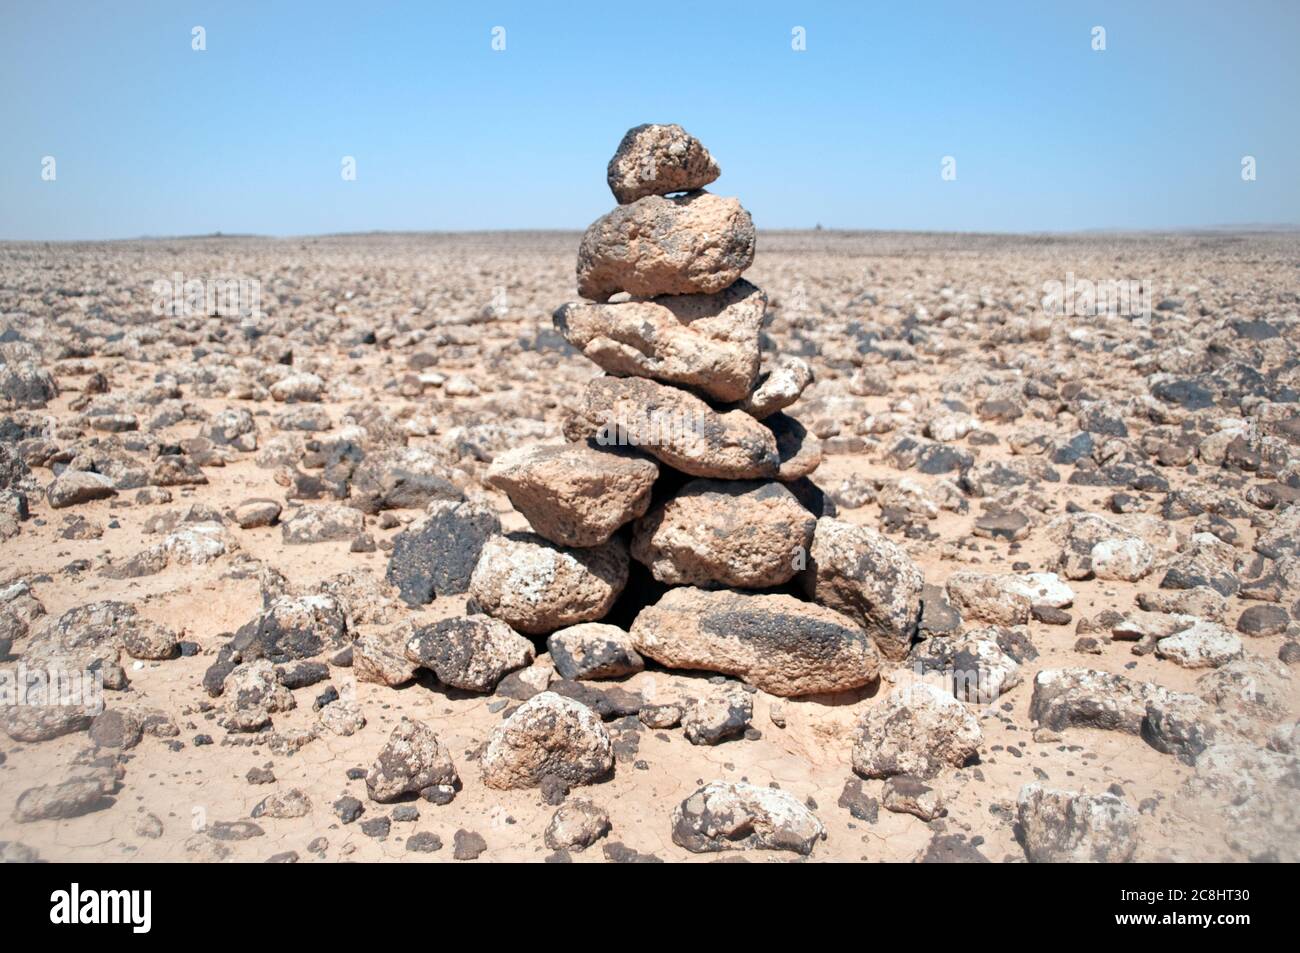 A cairn of basalt rocks from ancient volcanoes cover the eastern desert, or 'black desert,' in the Badia region of the Hashemite Kingdom of Jordan. Stock Photo